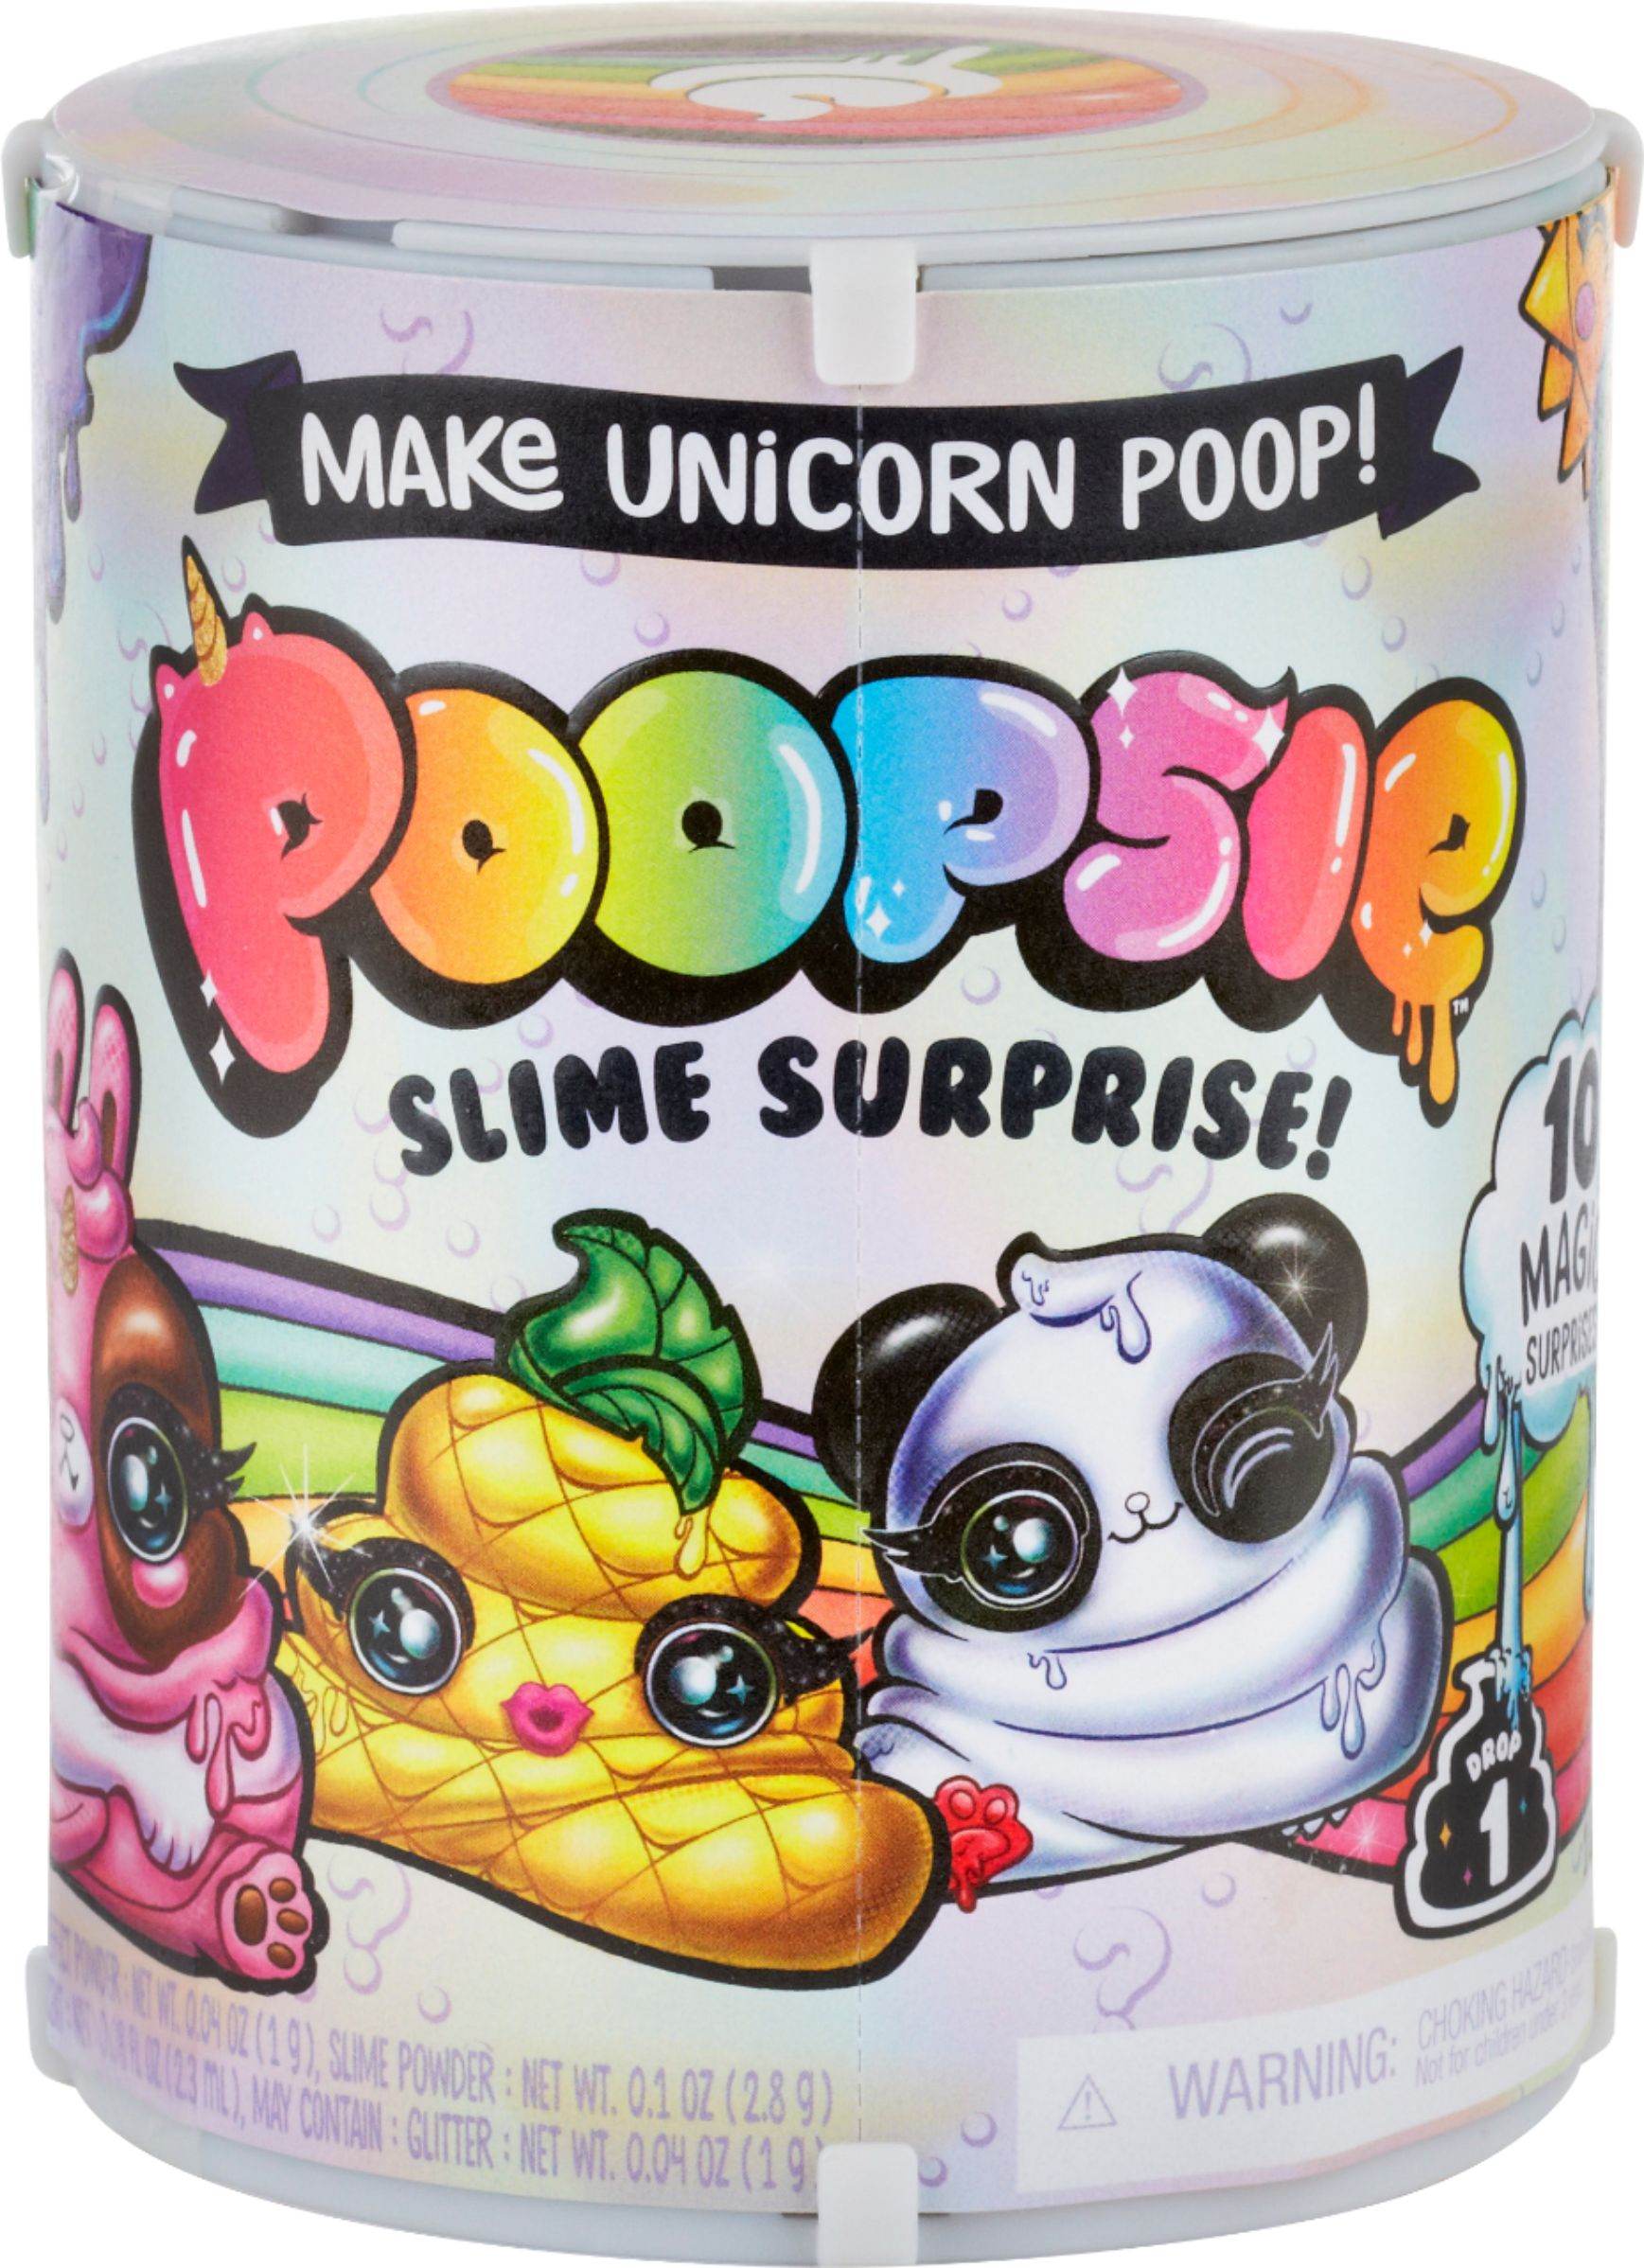 12cm Neu Poopsie Slime Unicorn Surprise Pack Series Toy Kreative Spielwaren 